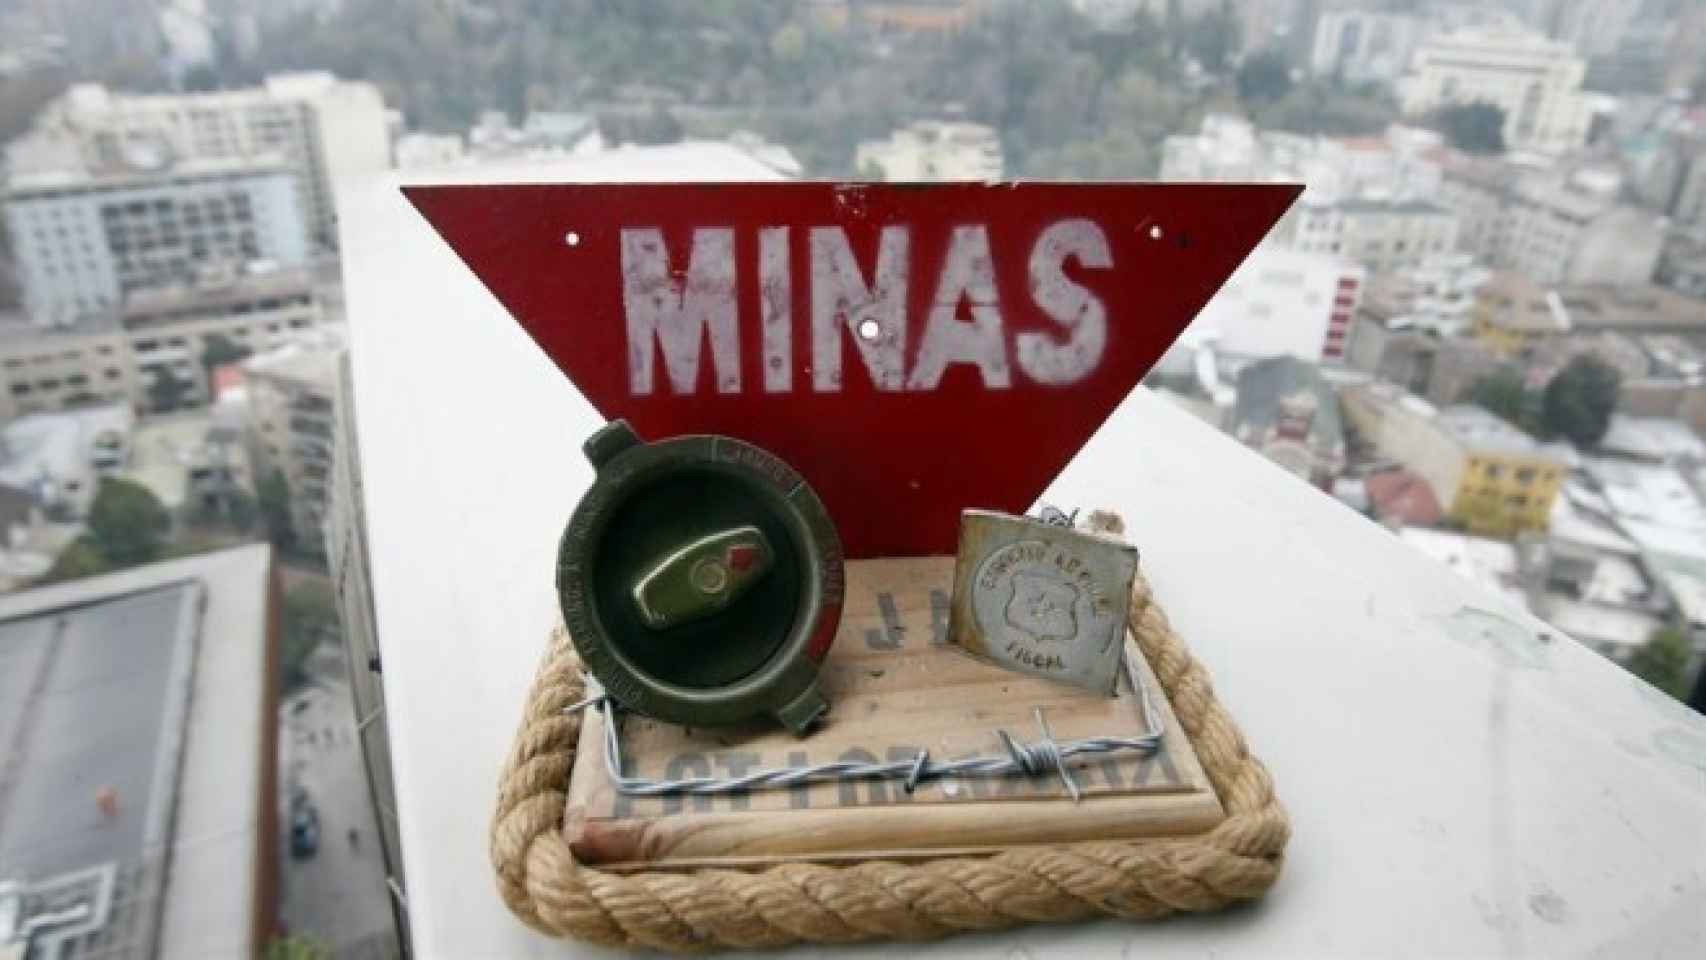 Vista de una maqueta con partes de una mina antipersona y una señal de advertencia.